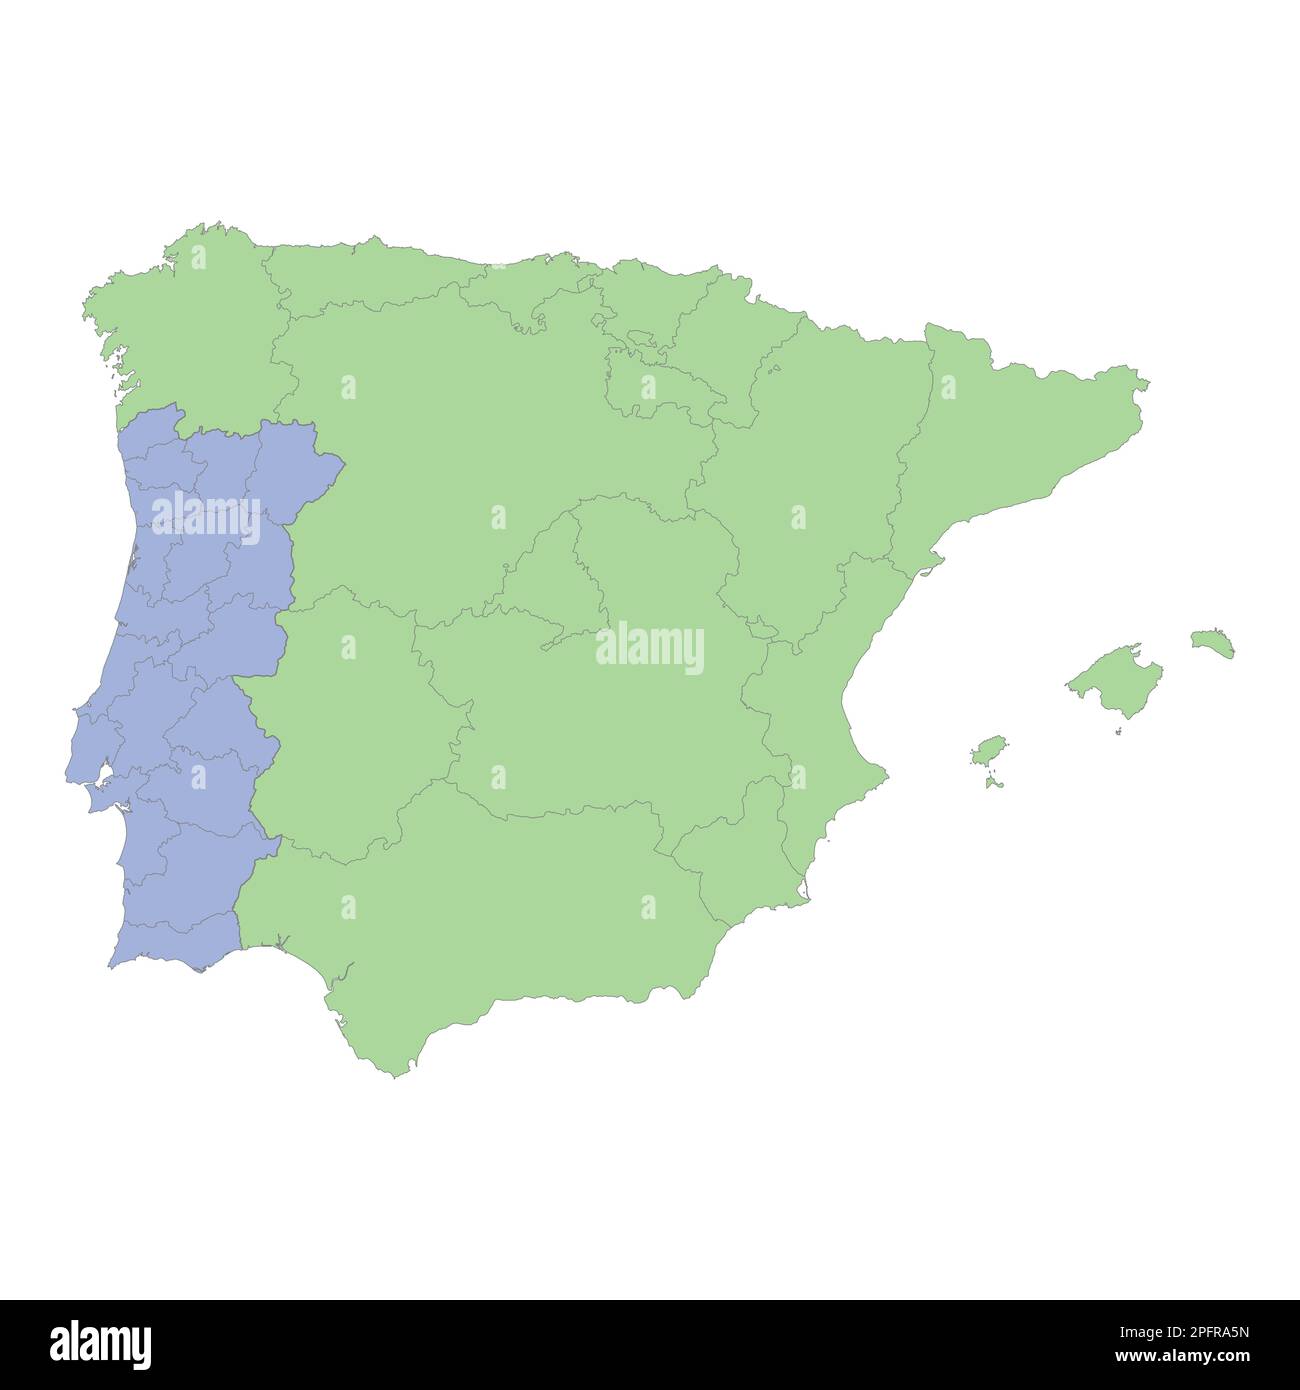 Mappa politica di alta qualità della Spagna e del Portogallo con i confini delle regioni o province. Illustrazione vettoriale Illustrazione Vettoriale